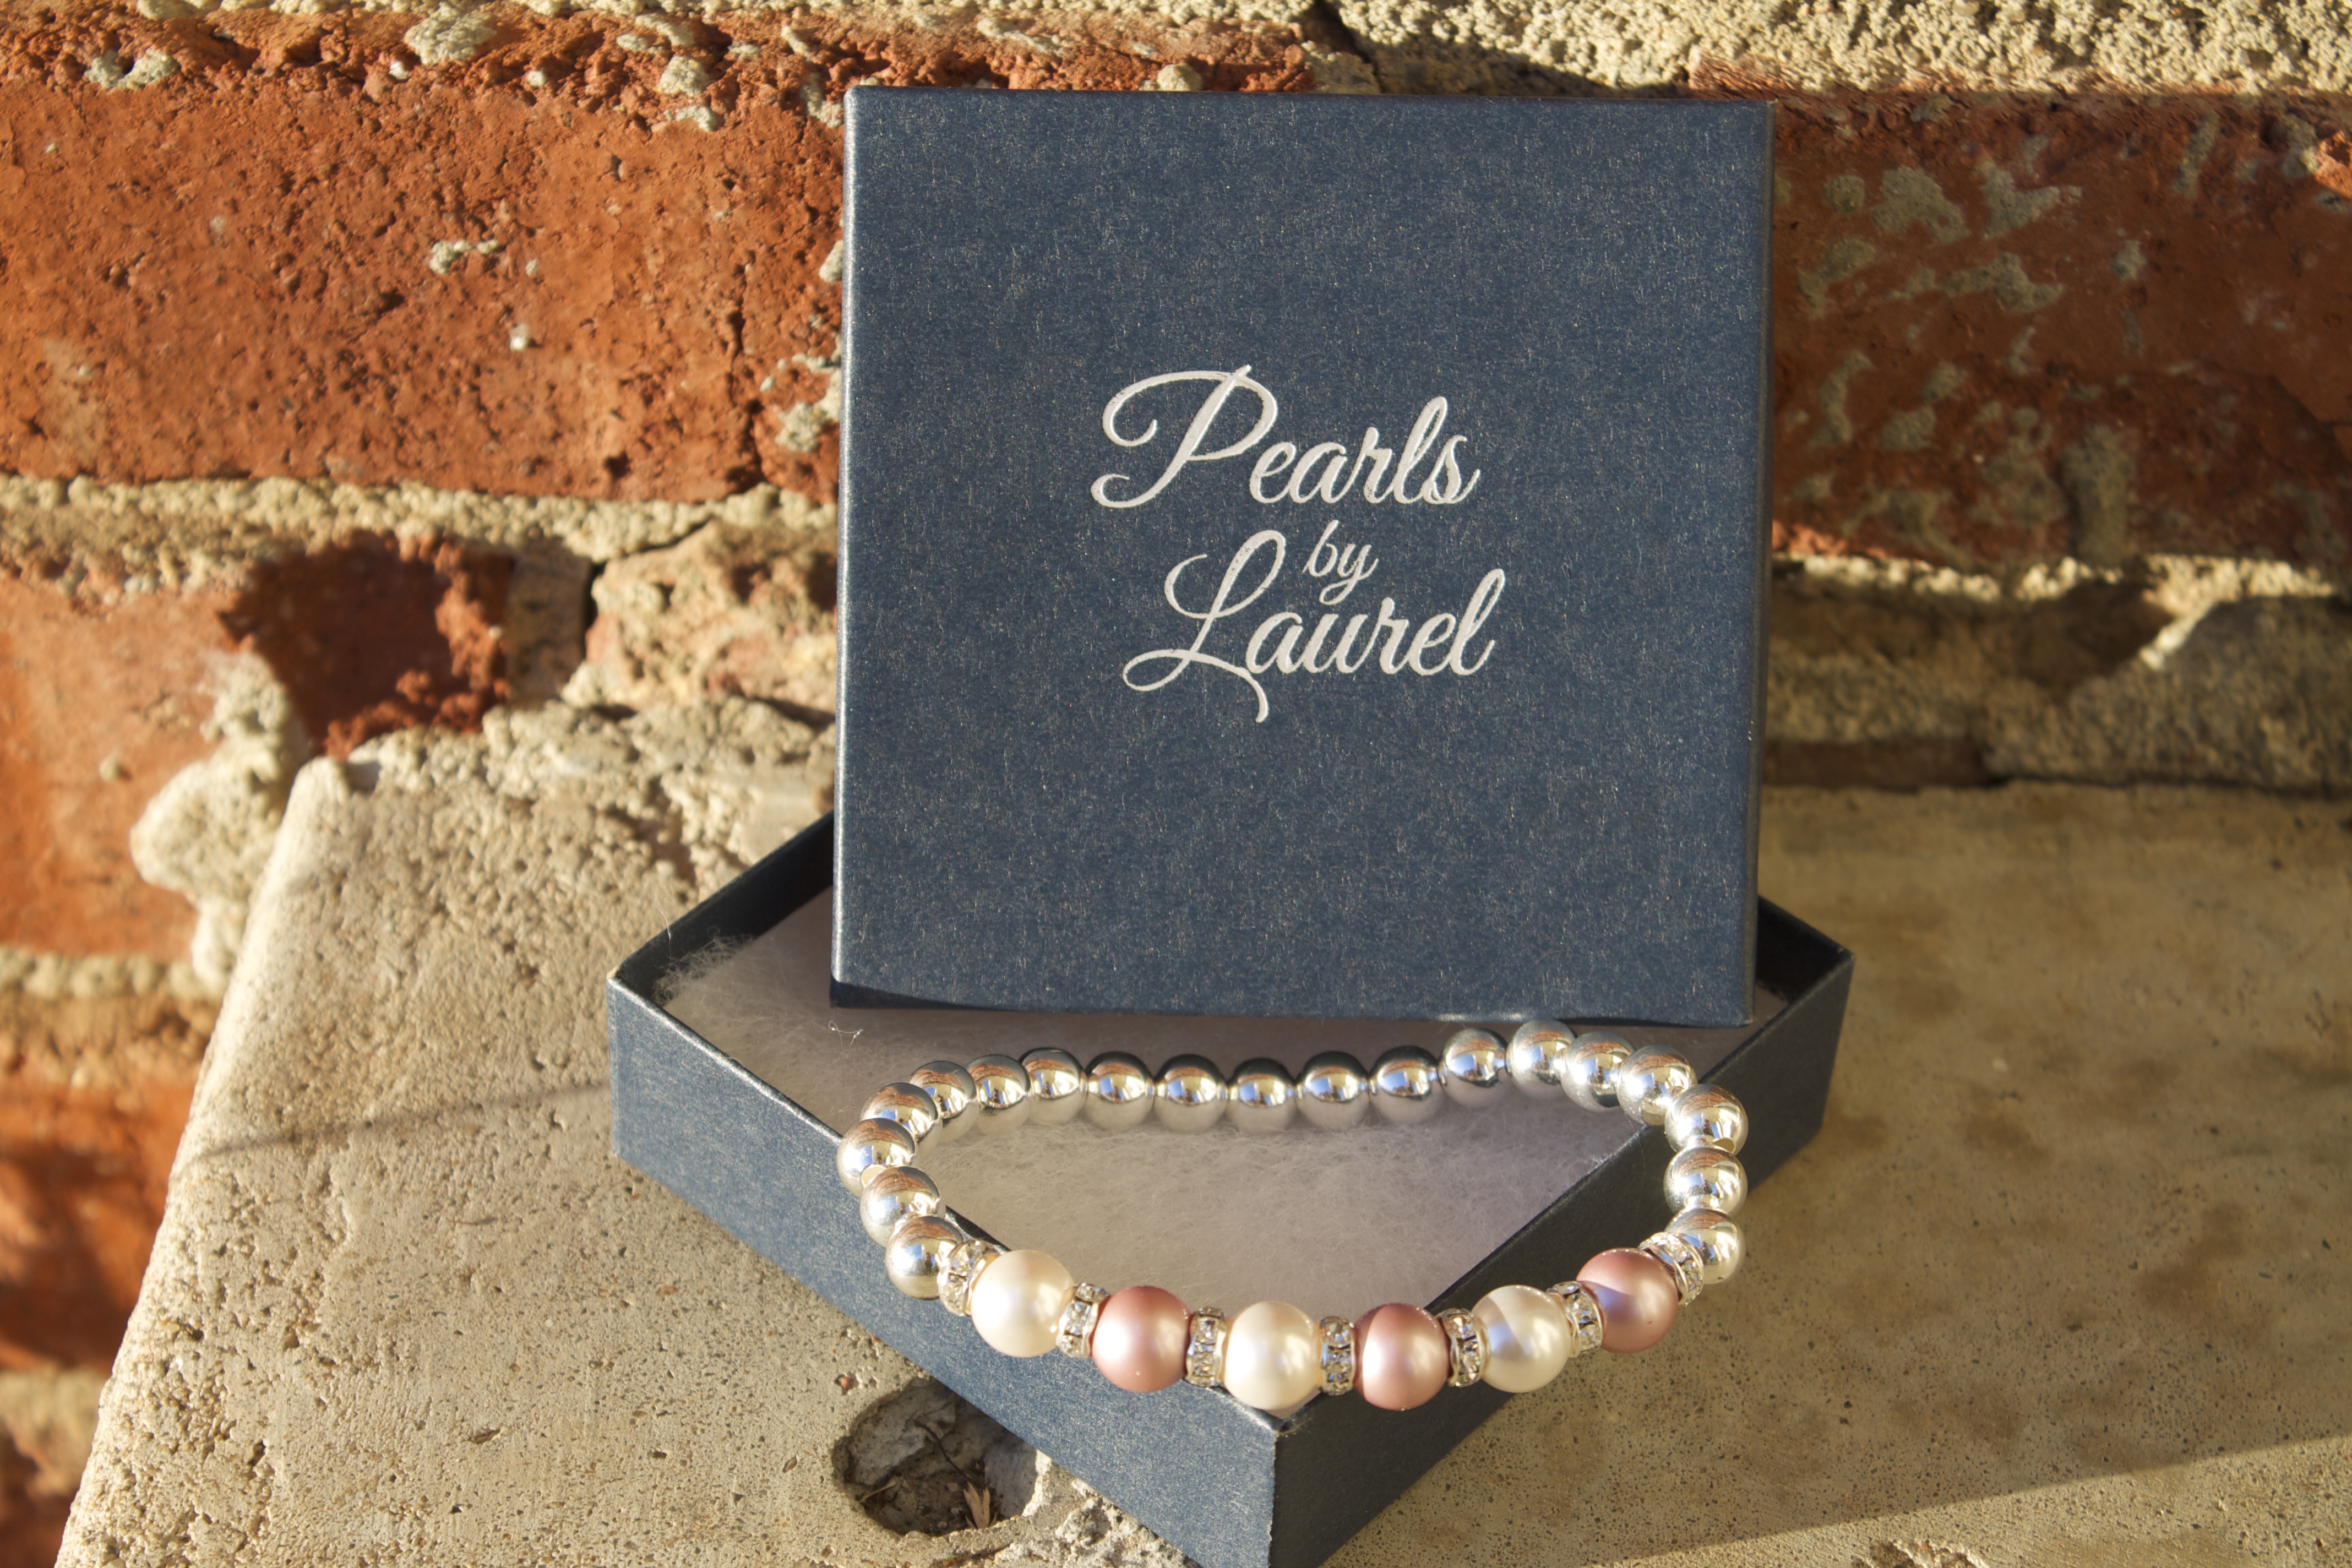 Pearls by Laurel 